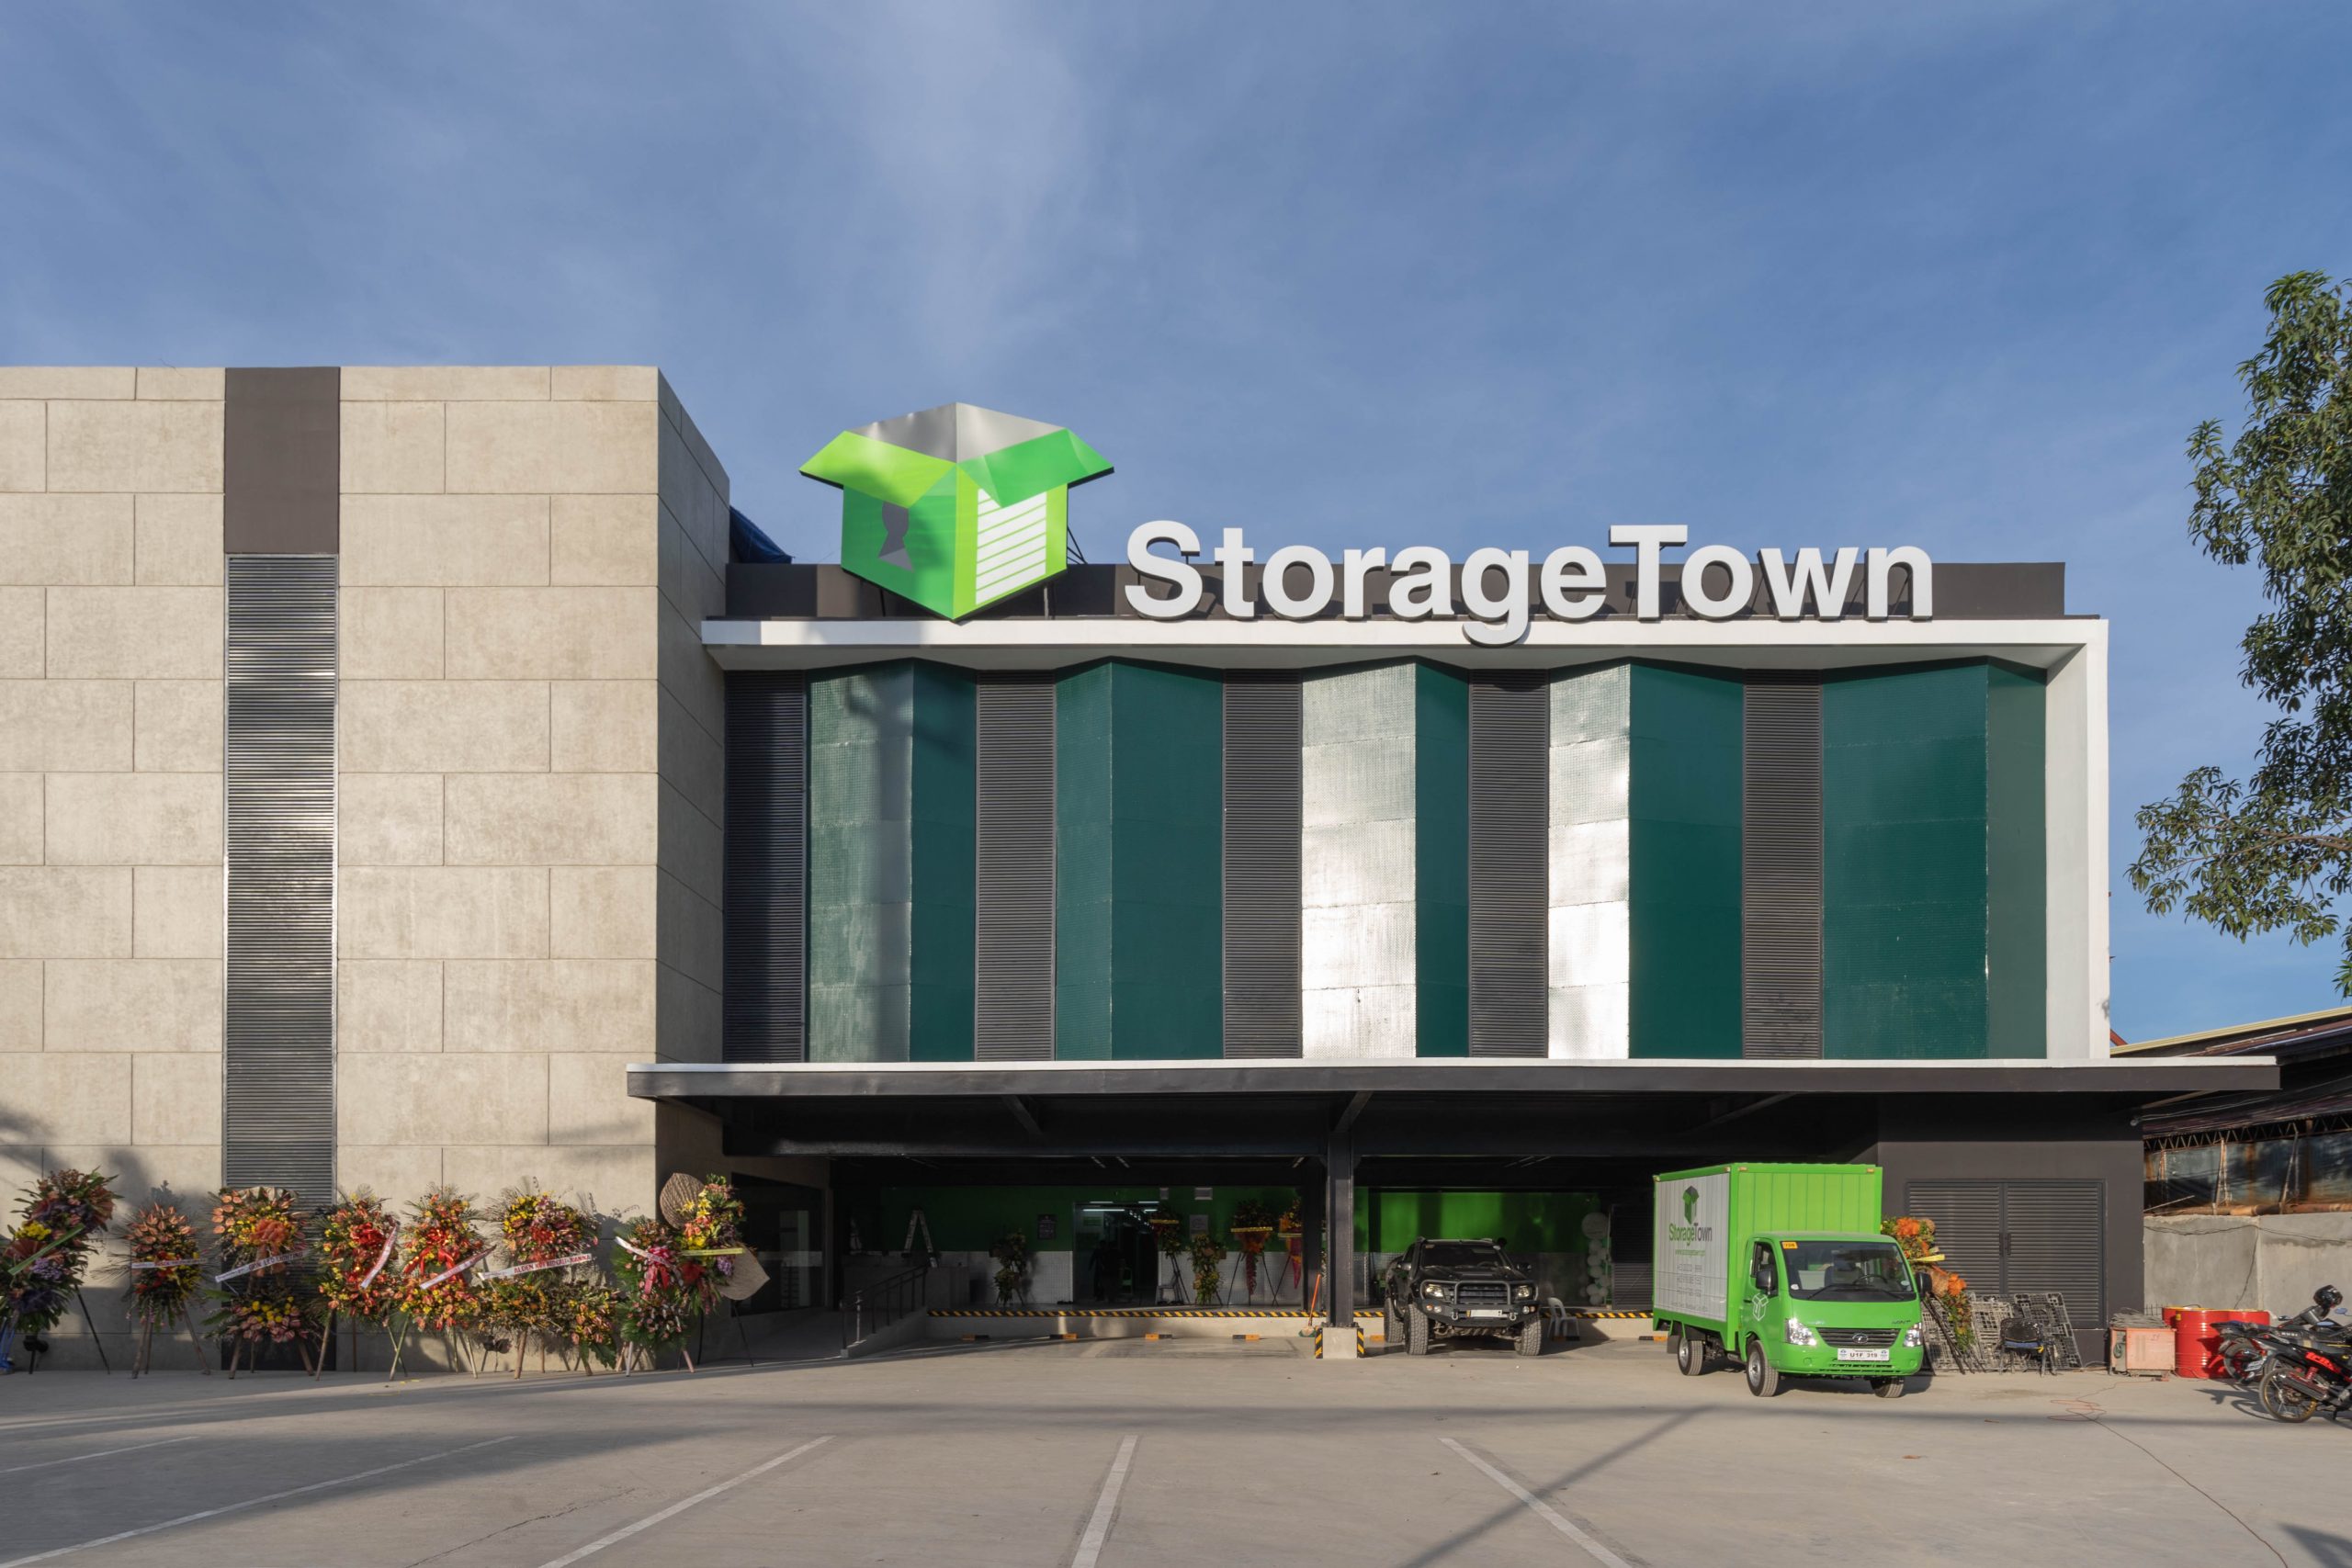 StorageTown